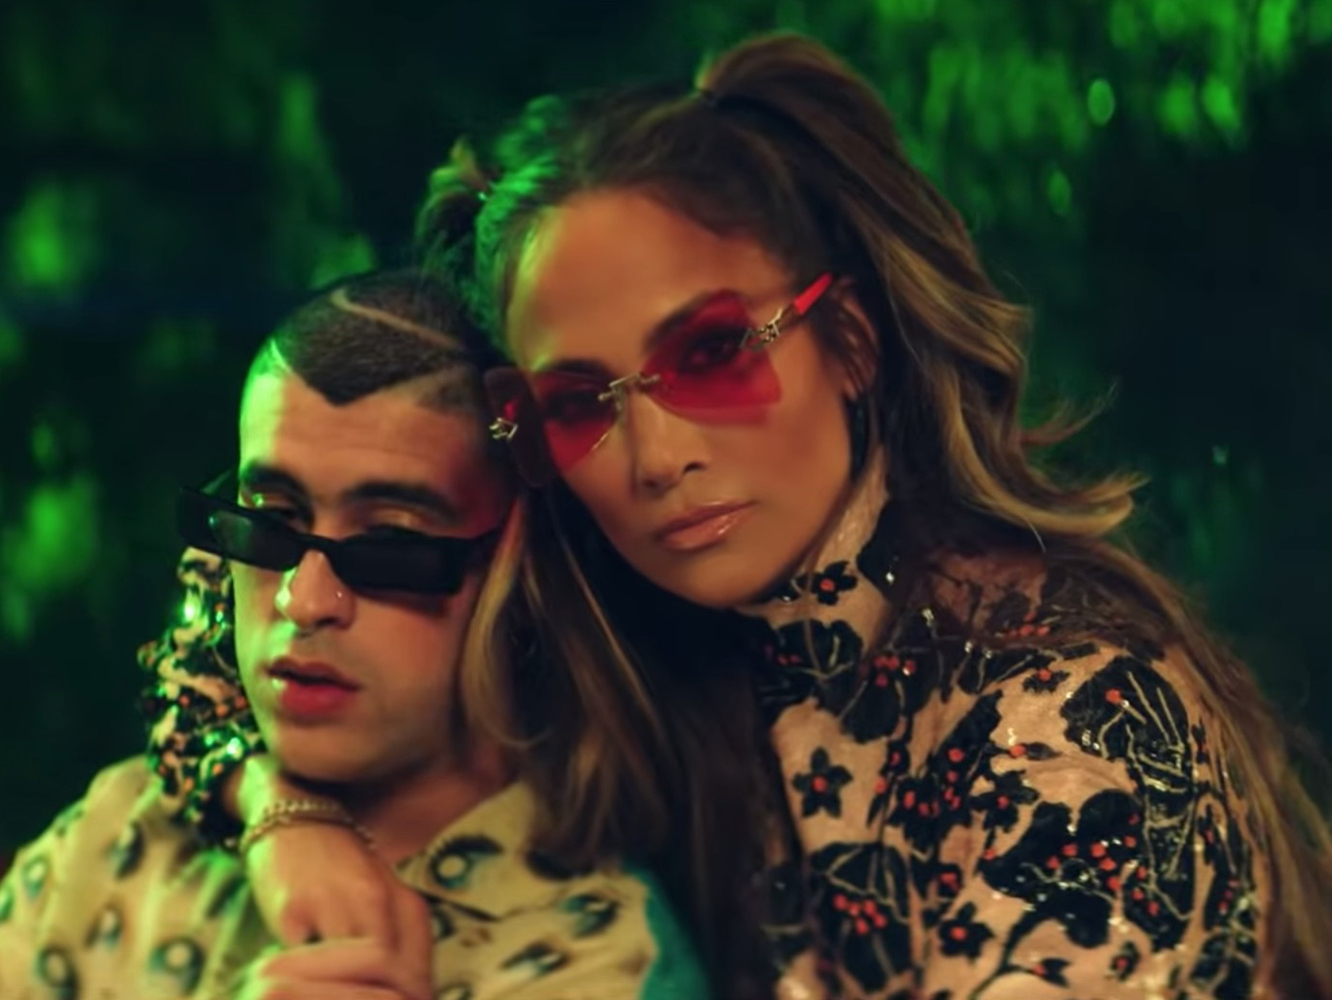  Jennifer Lopez ejerce de invitada en su propio tema junto a Bad Bunny, ‘Te Gusté’